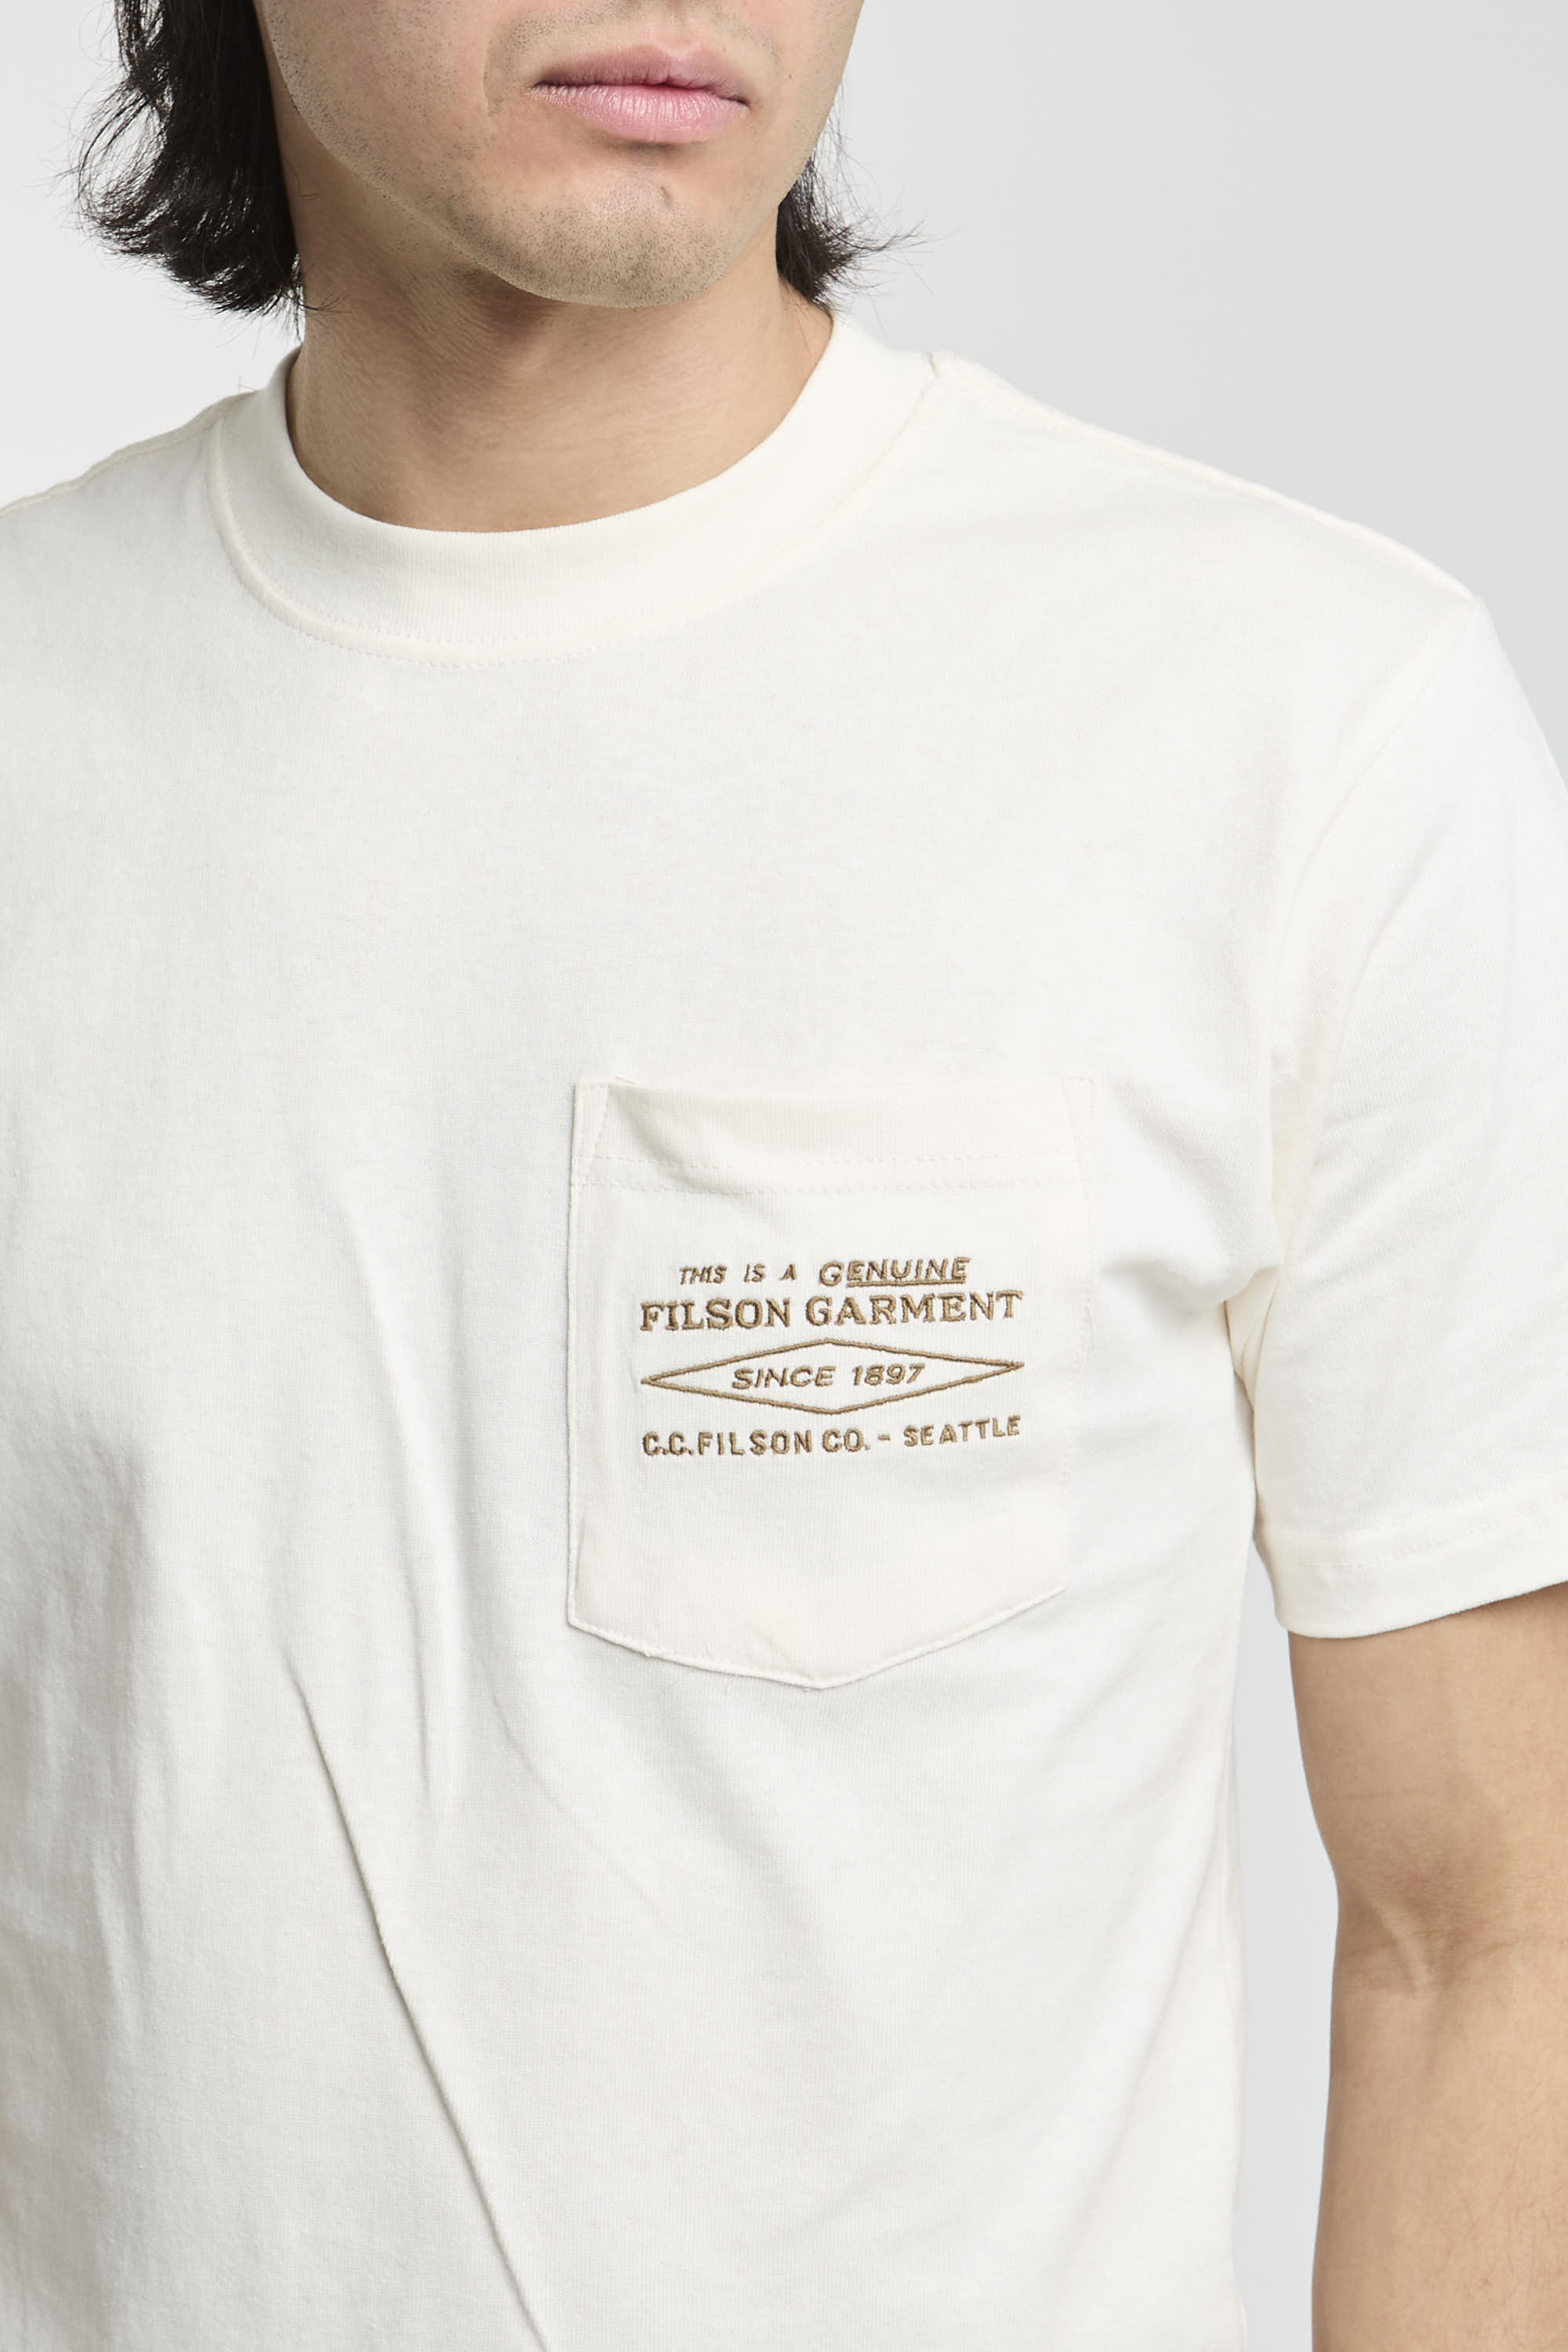 Filson T-Shirt Jersey Weiß-3